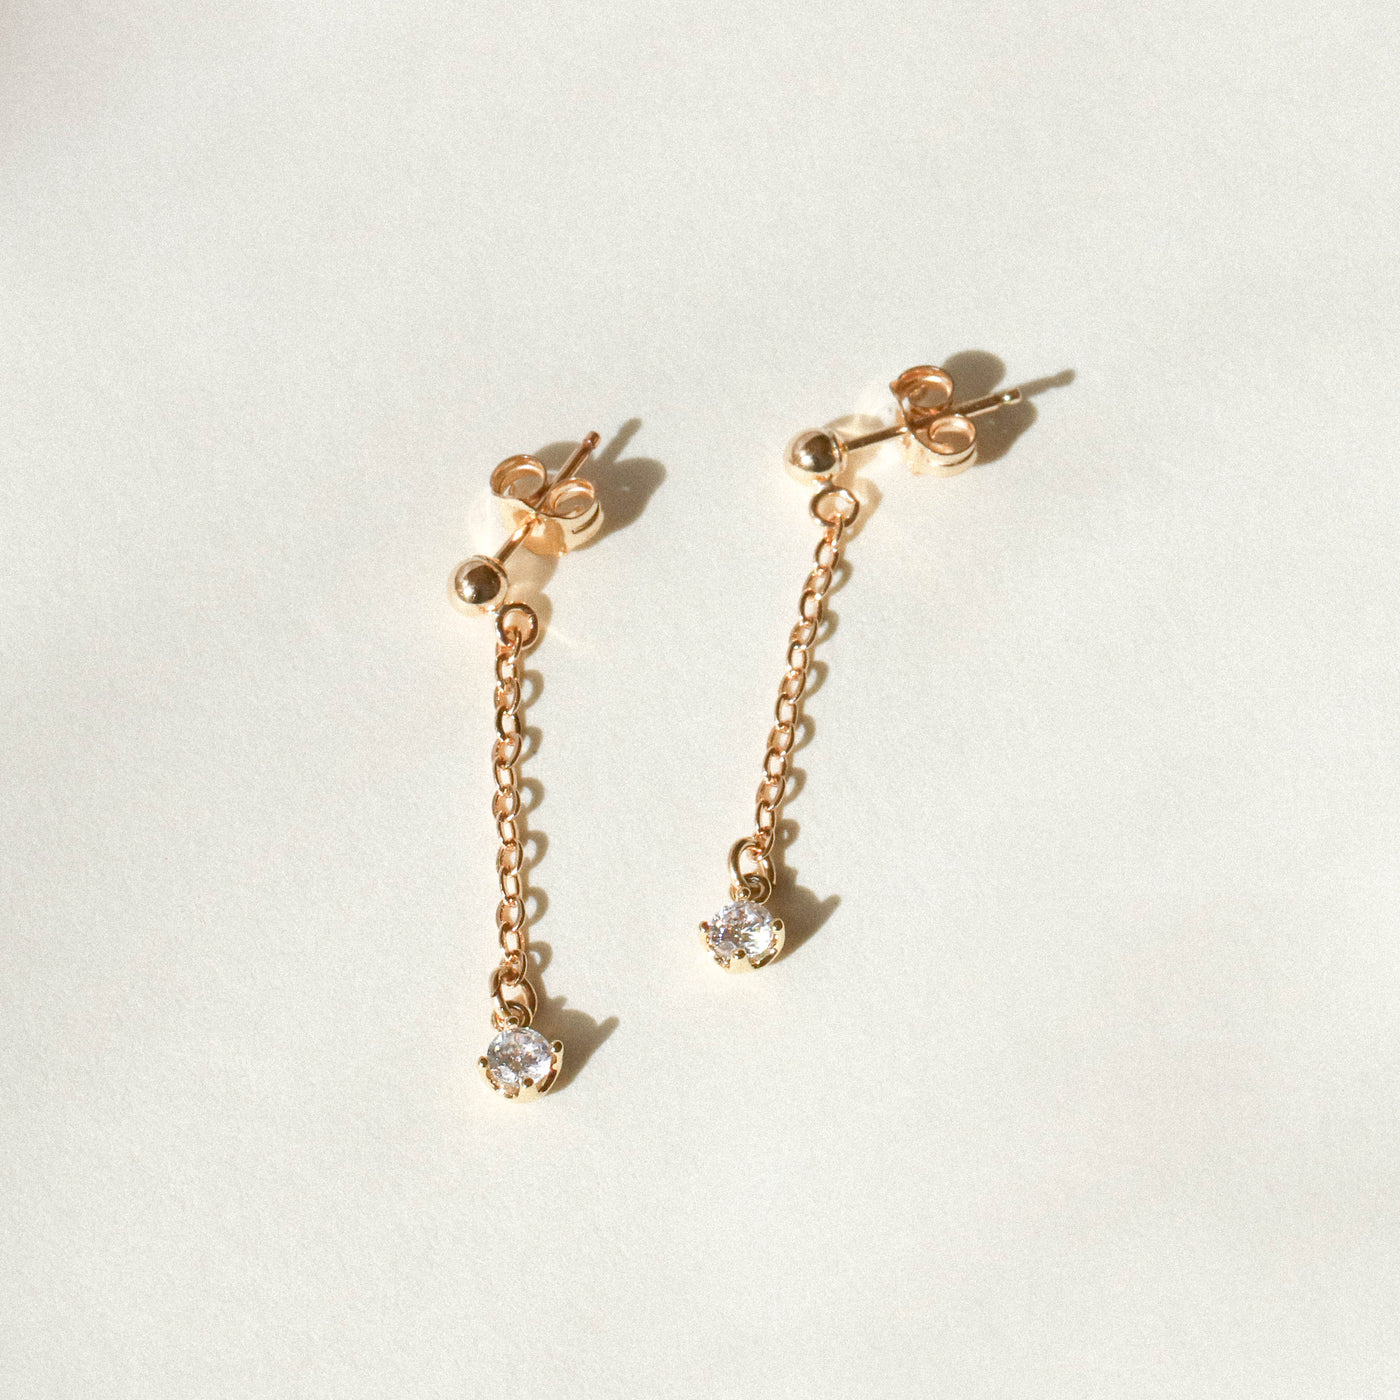 Minimalist chain earrings for everyday wear